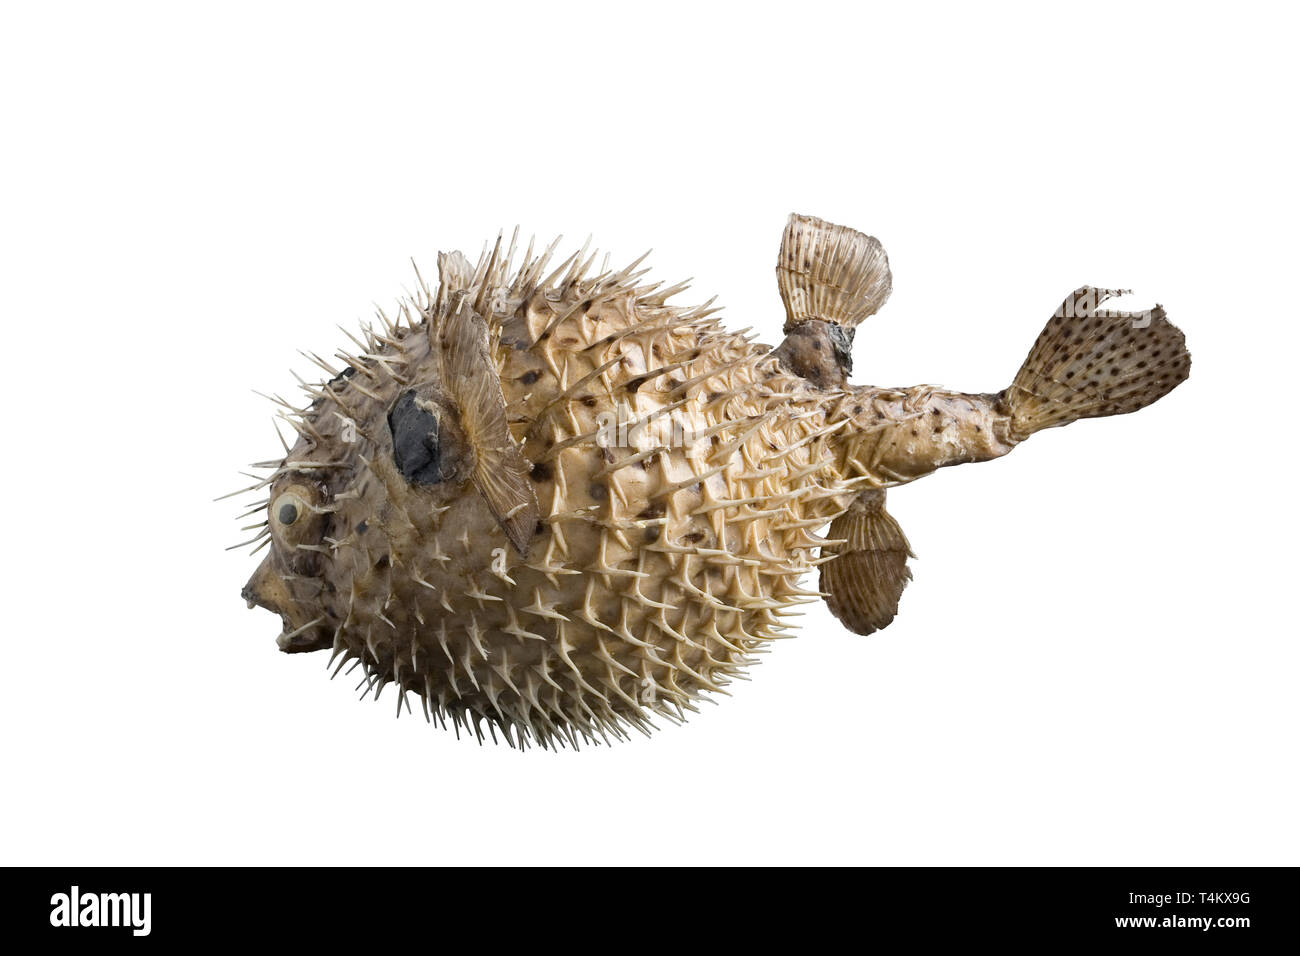 big hedgehog fish isolated on white background Stock Photo